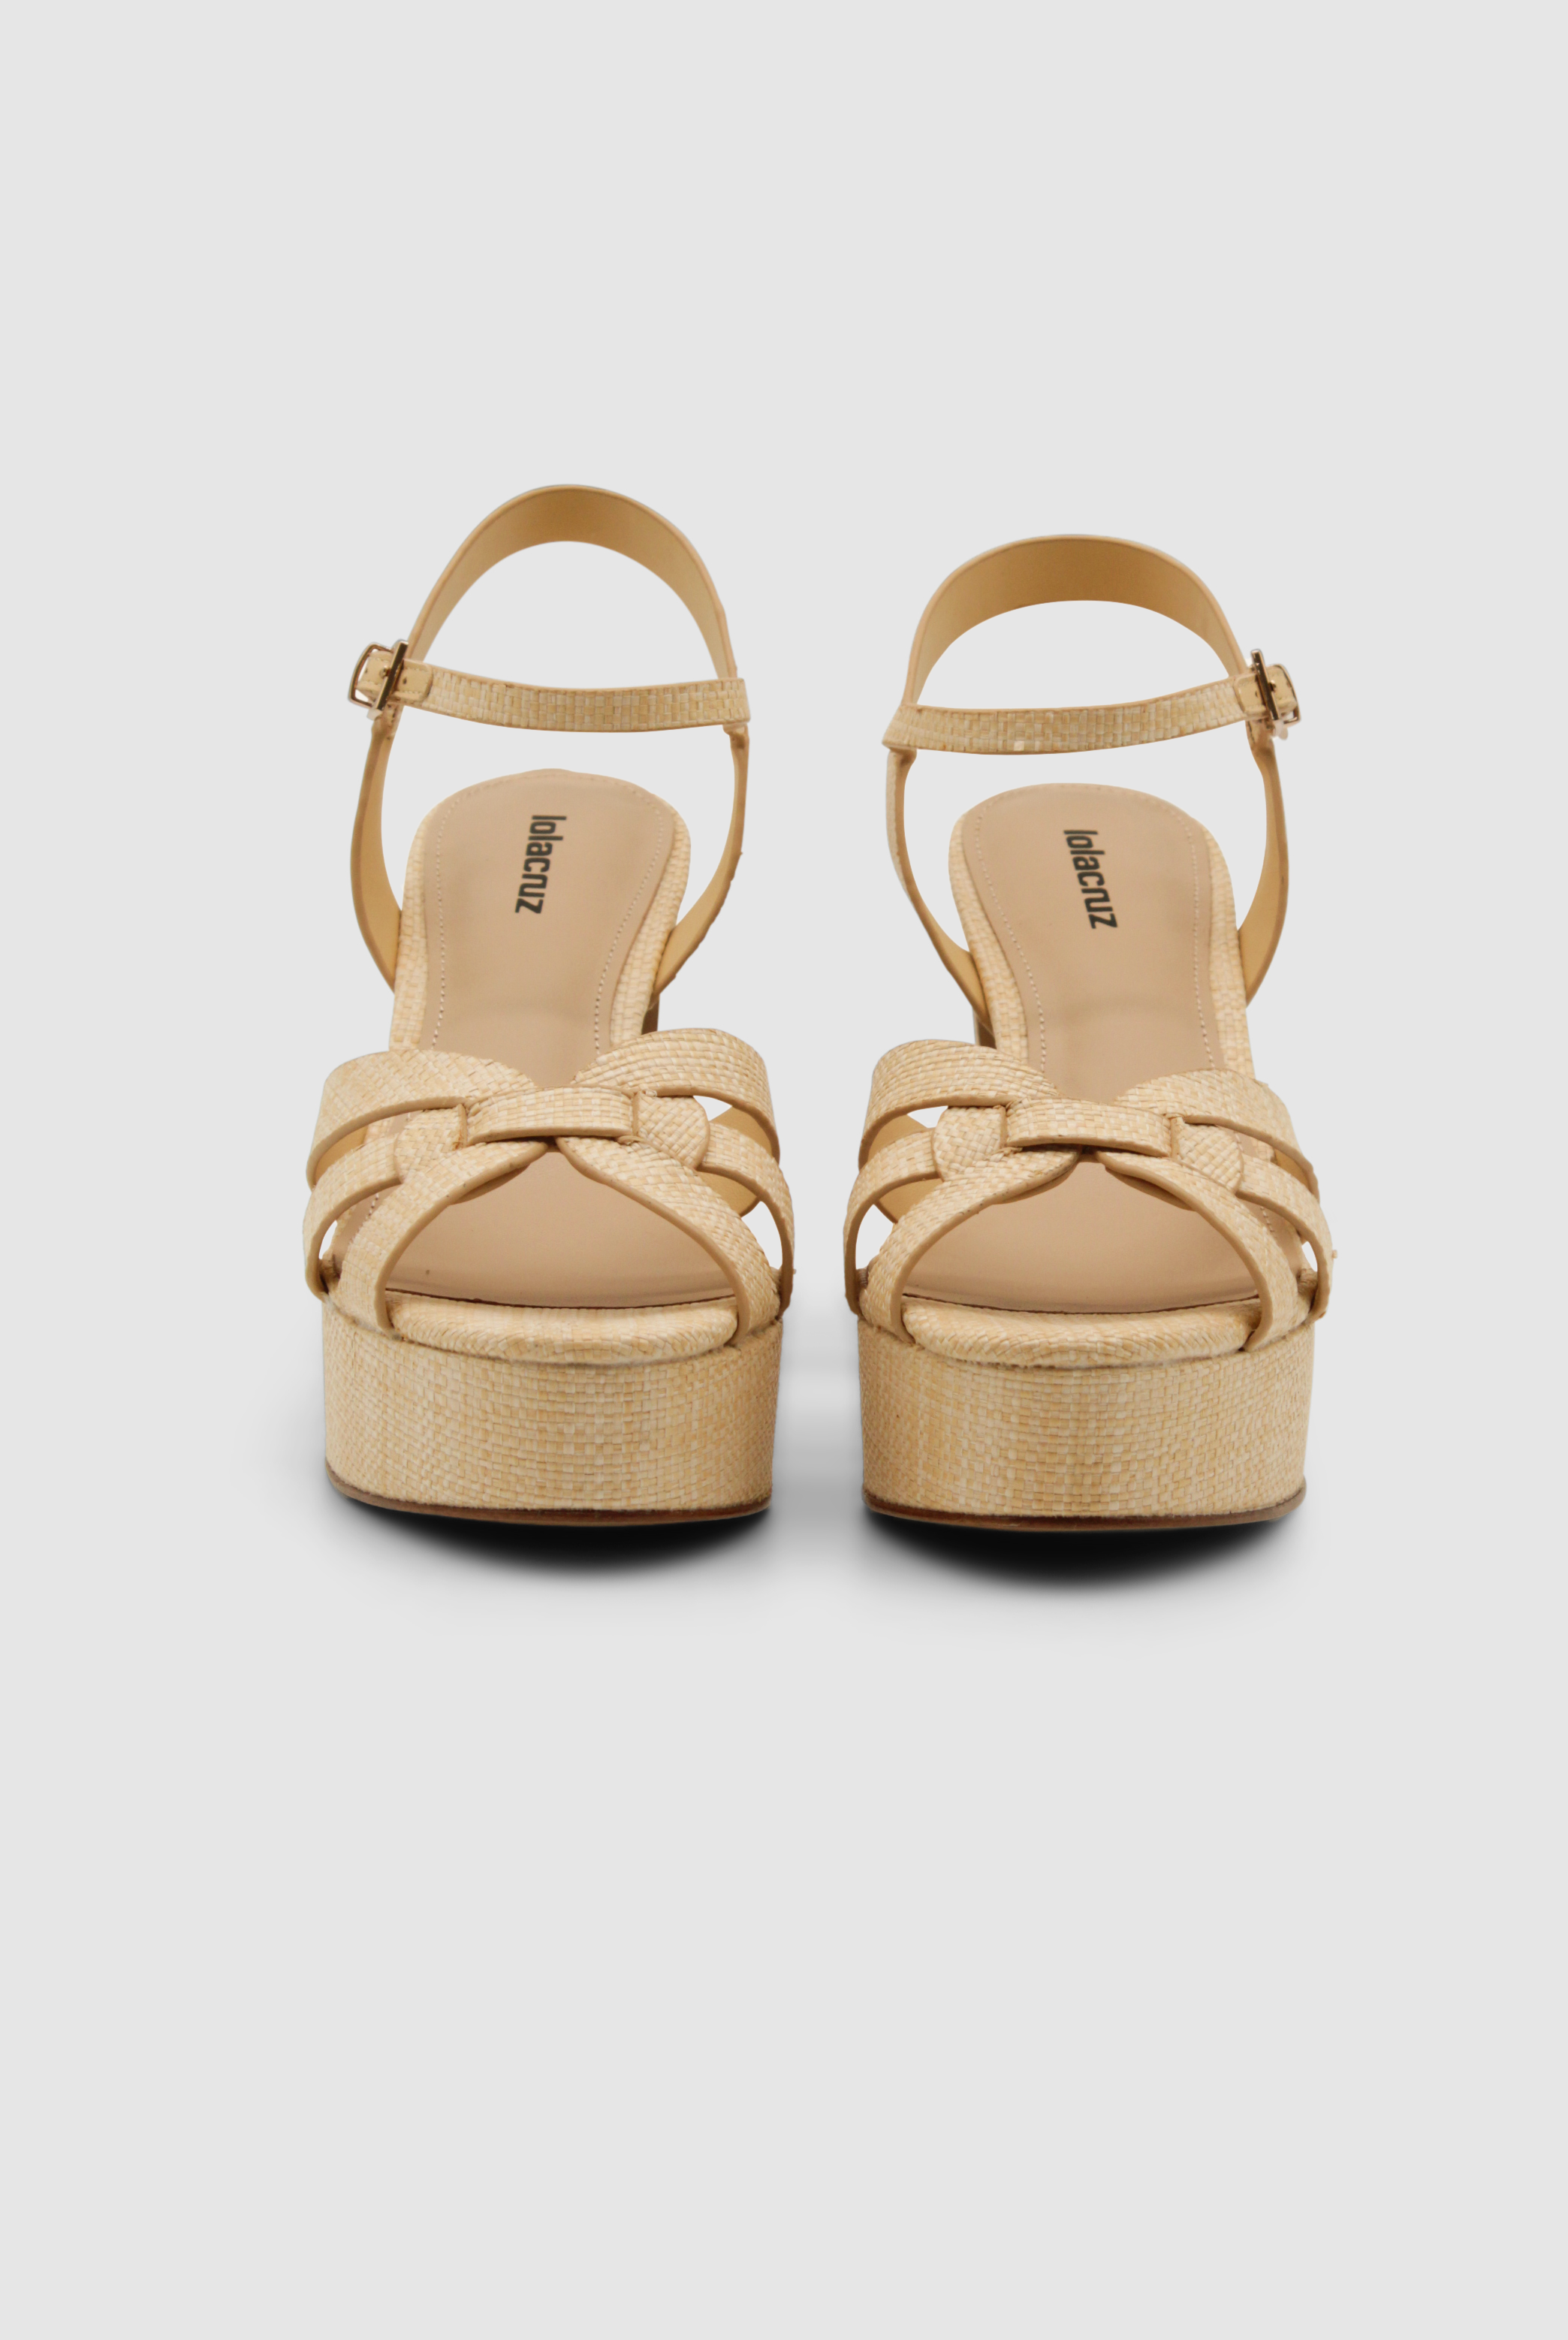 Sandalen von Lola Cruz mit einer Plateausohle und geflochtenen Riemen an den Zehen. Die Schuhe haben einen Riemen an der Ferse und haben einen hohen Absatz